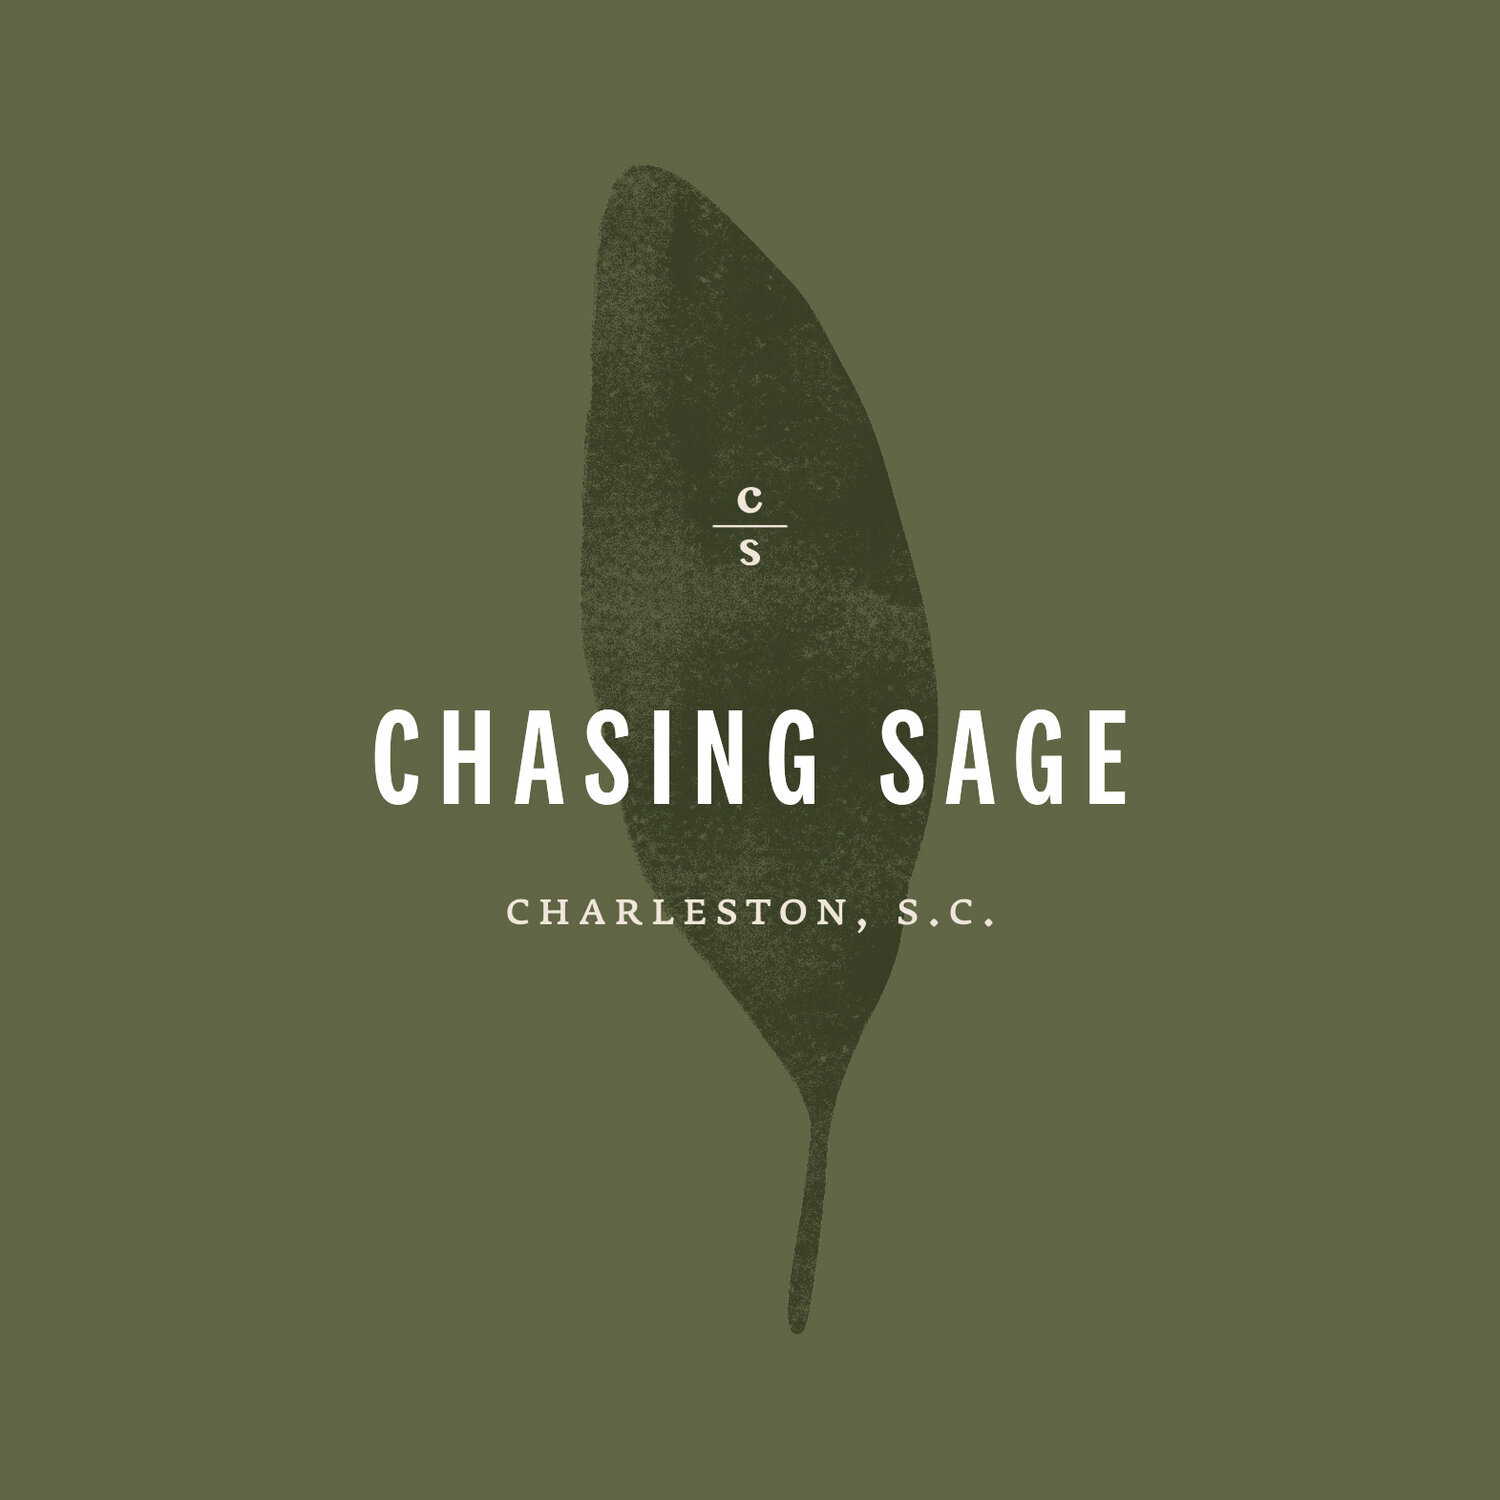 Chasing Sage Restaurant